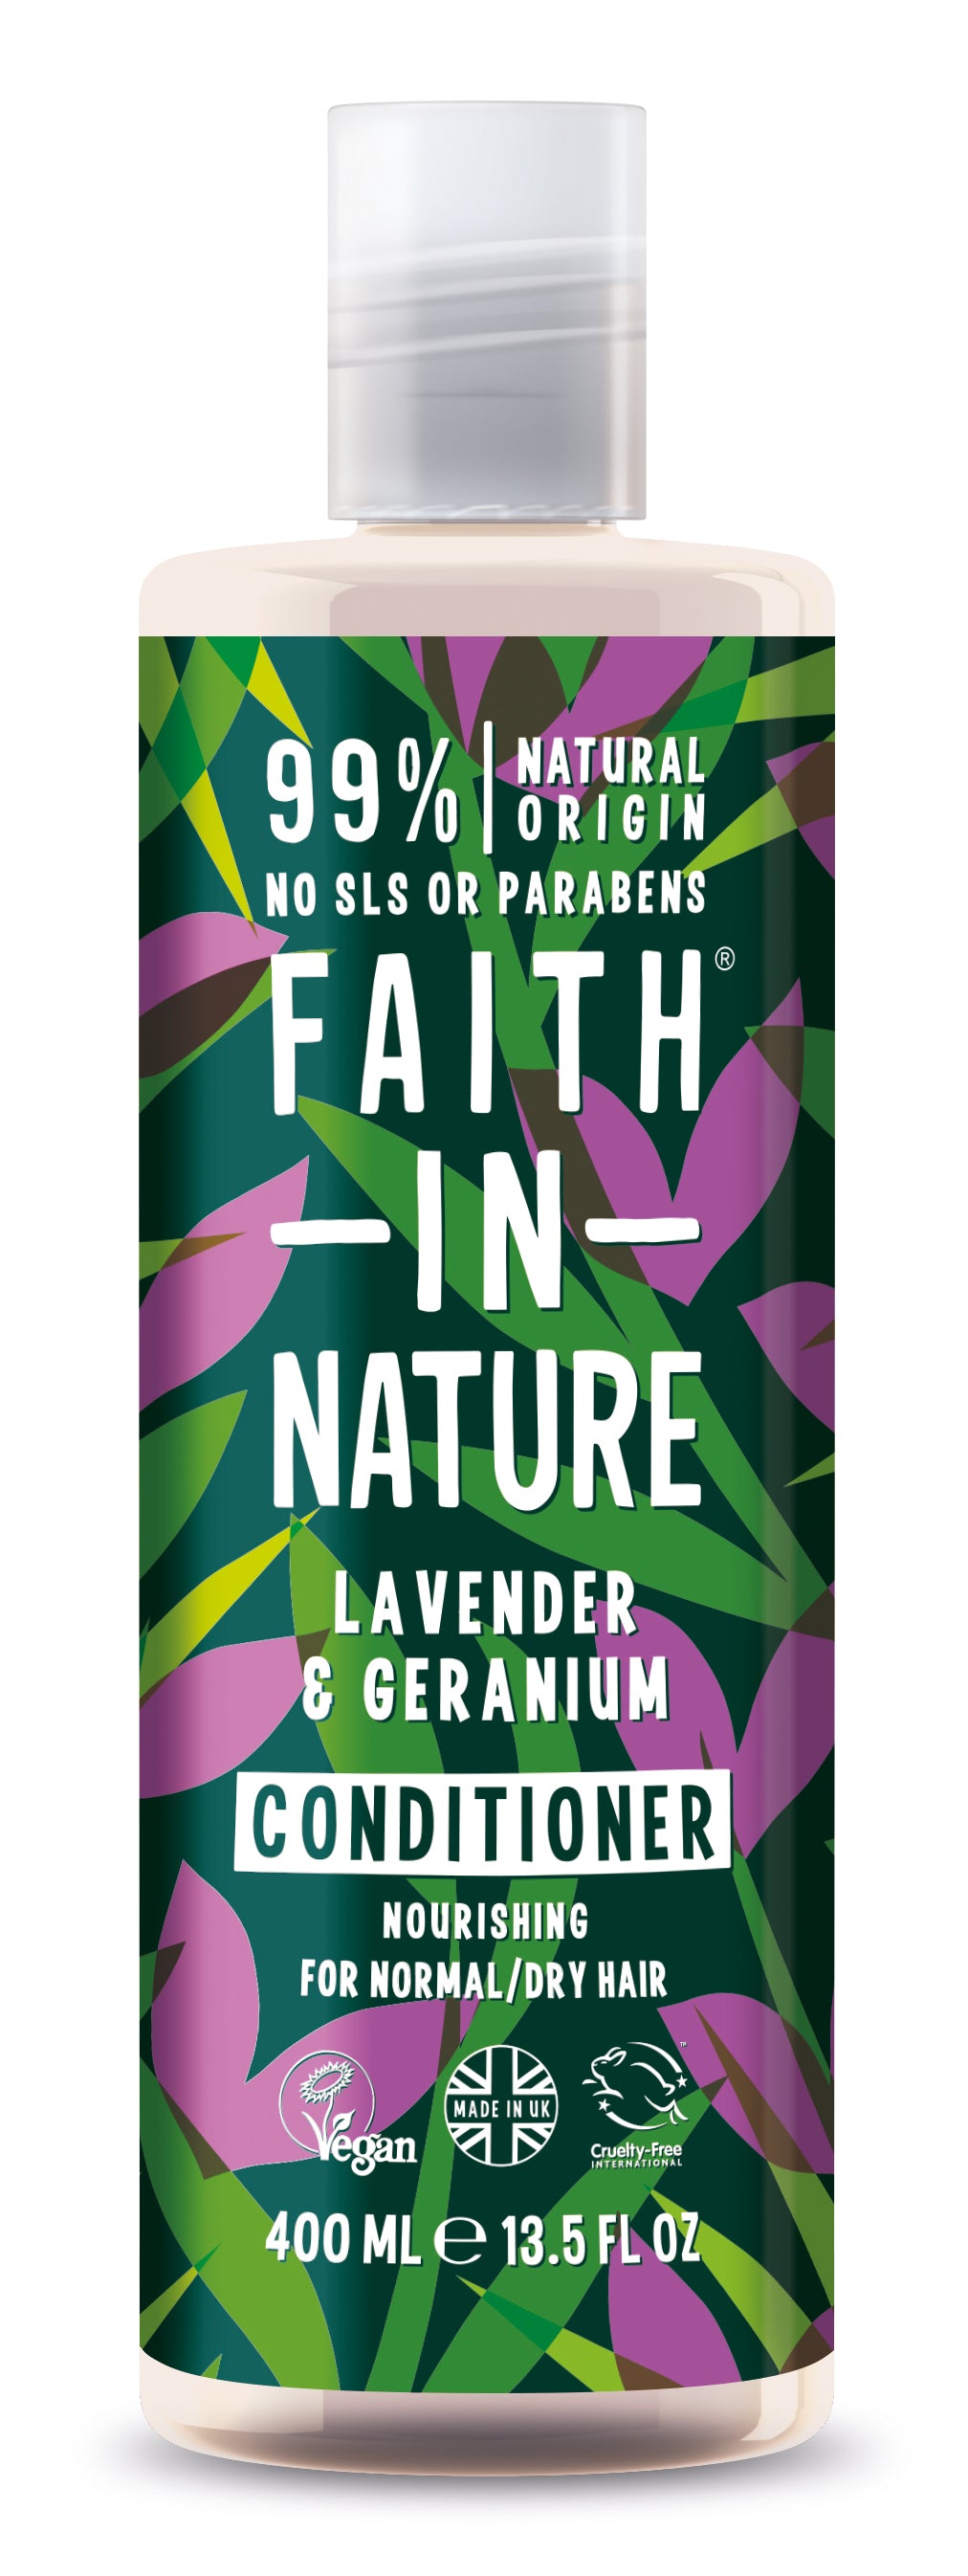 Lavendel og geranium shampoo 400 ml fra faith in nature